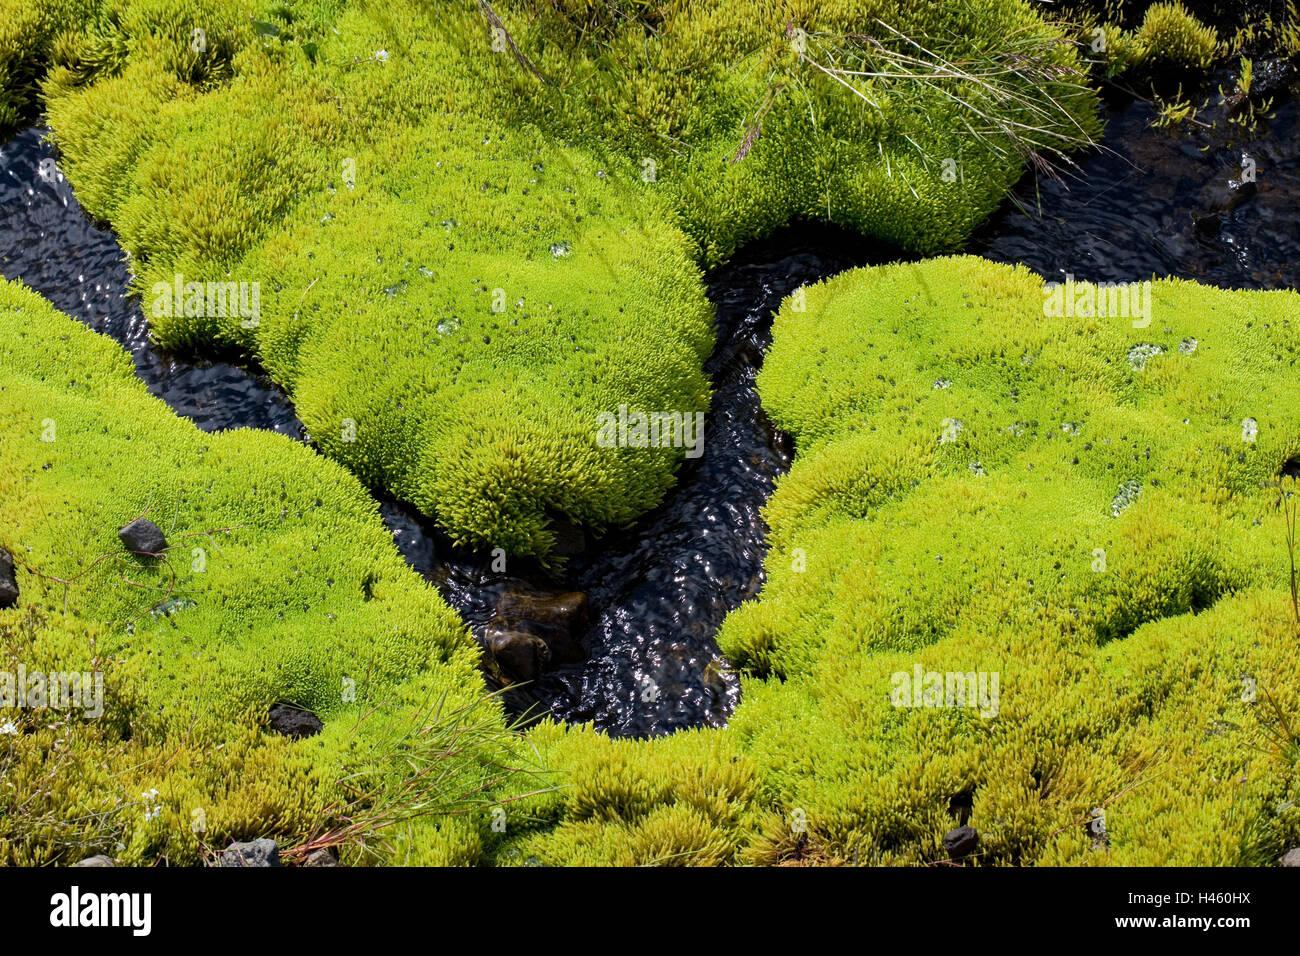 source-moss-fontinalis-spec-detail-vegetation-green-river-brook-water-H460HX.jpg